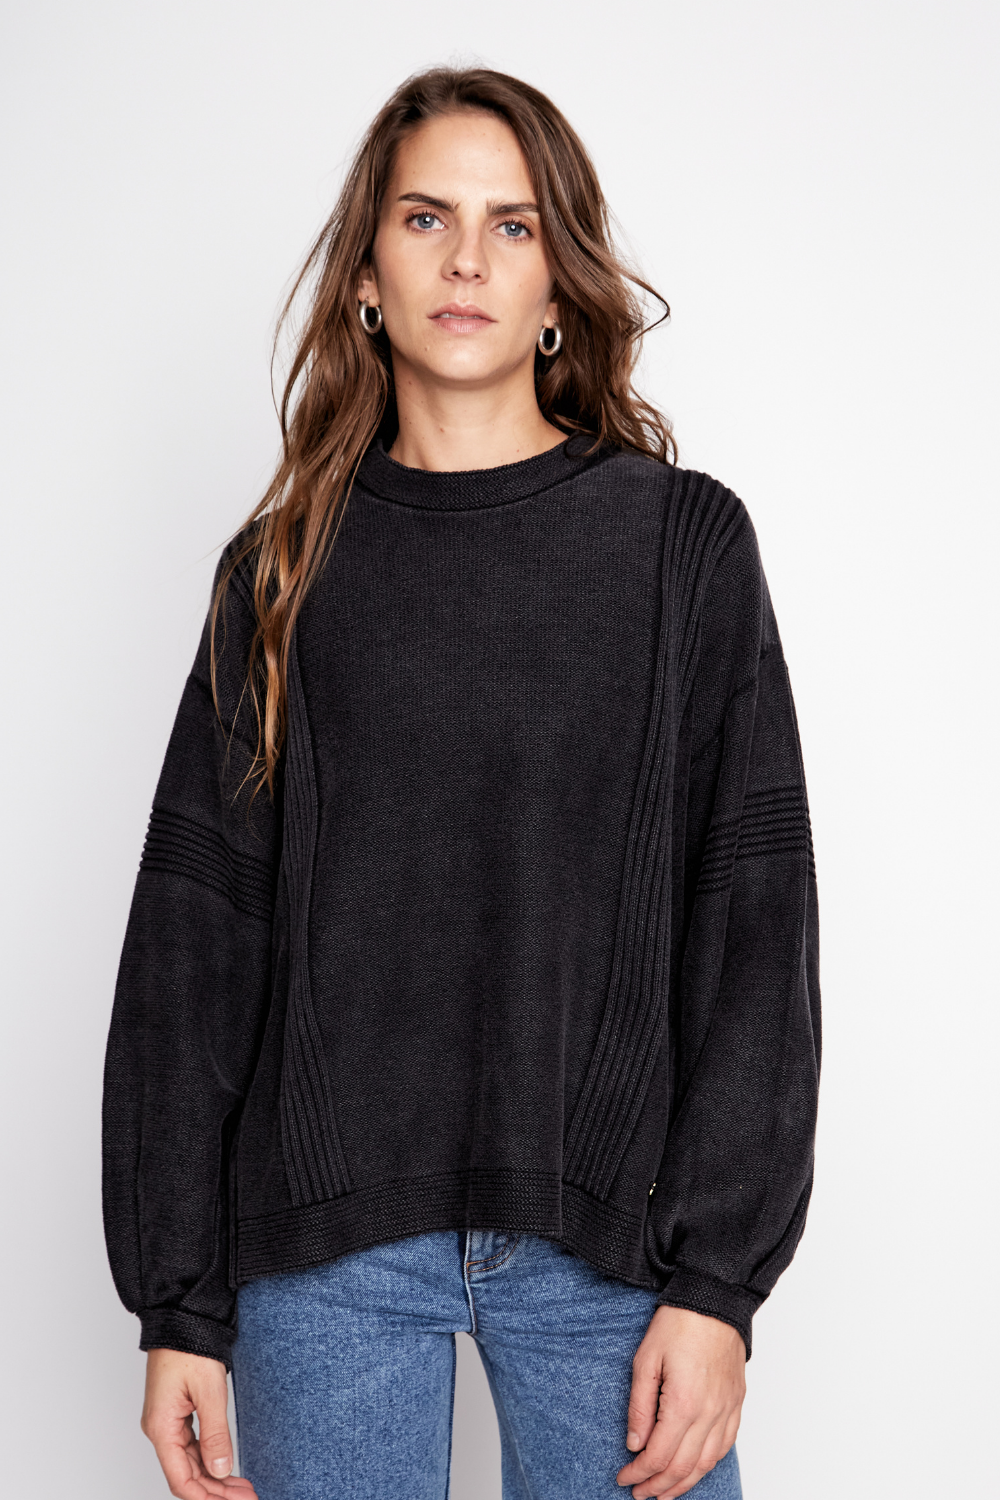 Sweater Viga Orgánico Negro Mujer